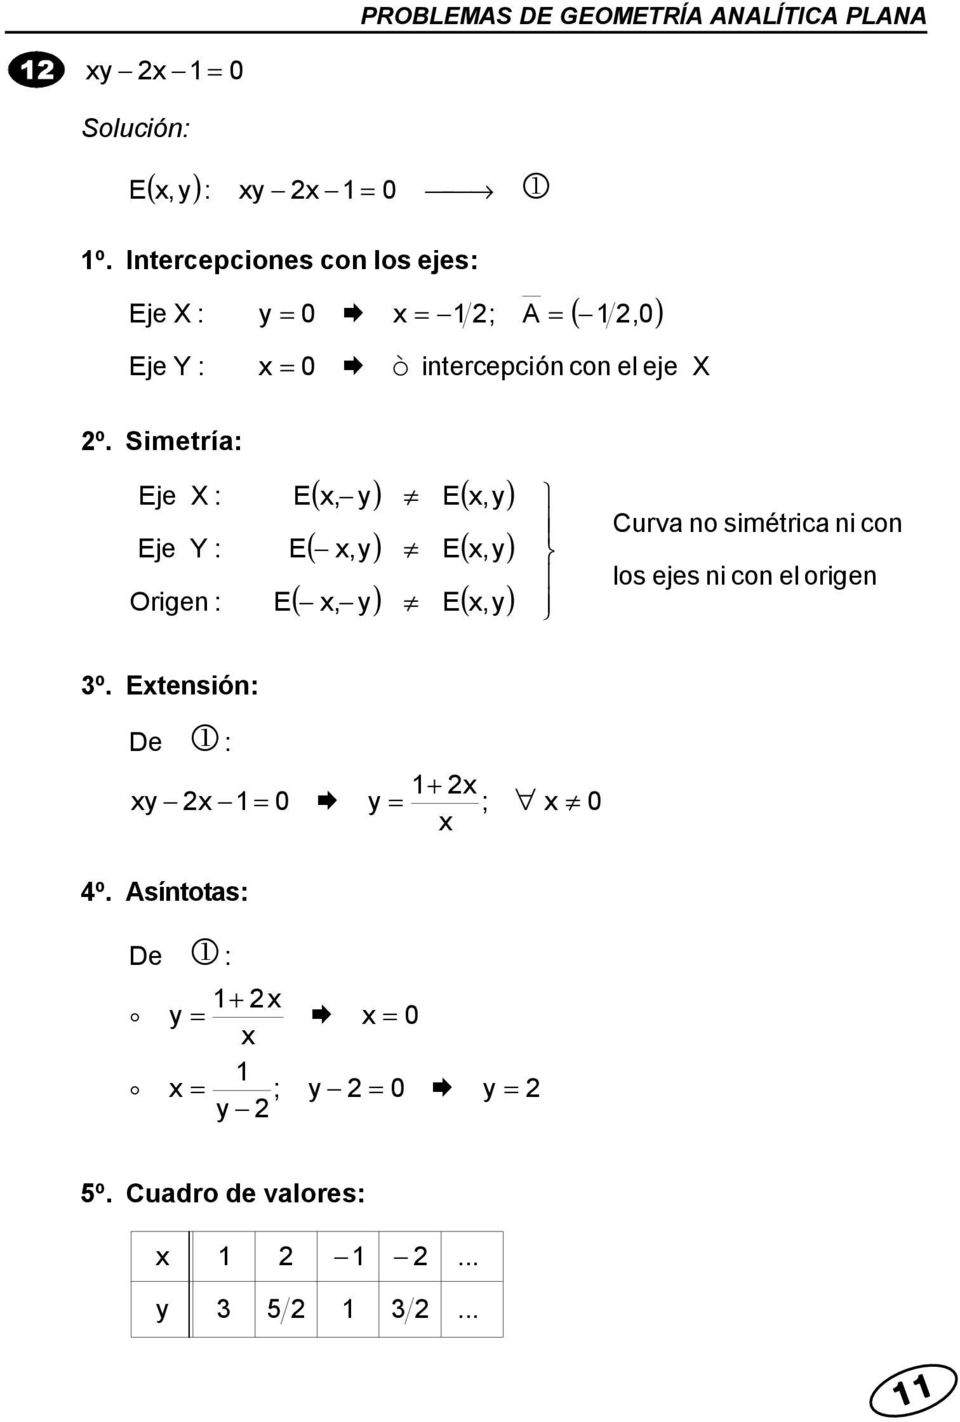 º. Simetrí Eje X Eje Y Origen E ( ) E(,) E, E(,) E(,) (, ) E(,) Curv no simétric